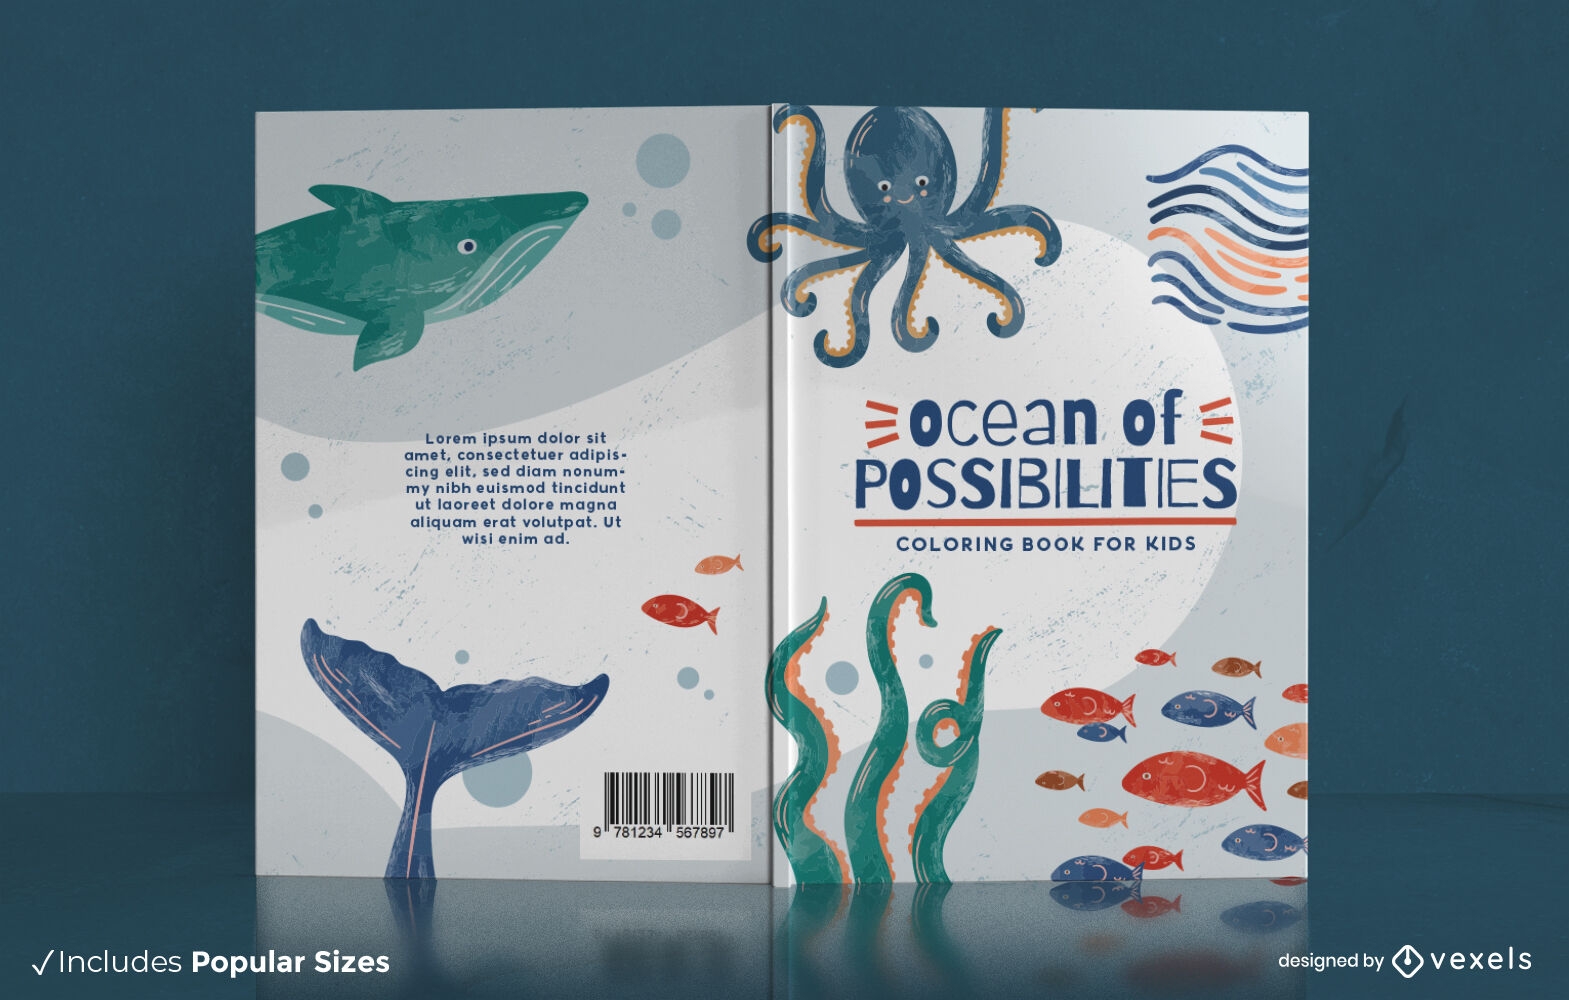 Diseño de portada de libro para colorear océano de posibilidades